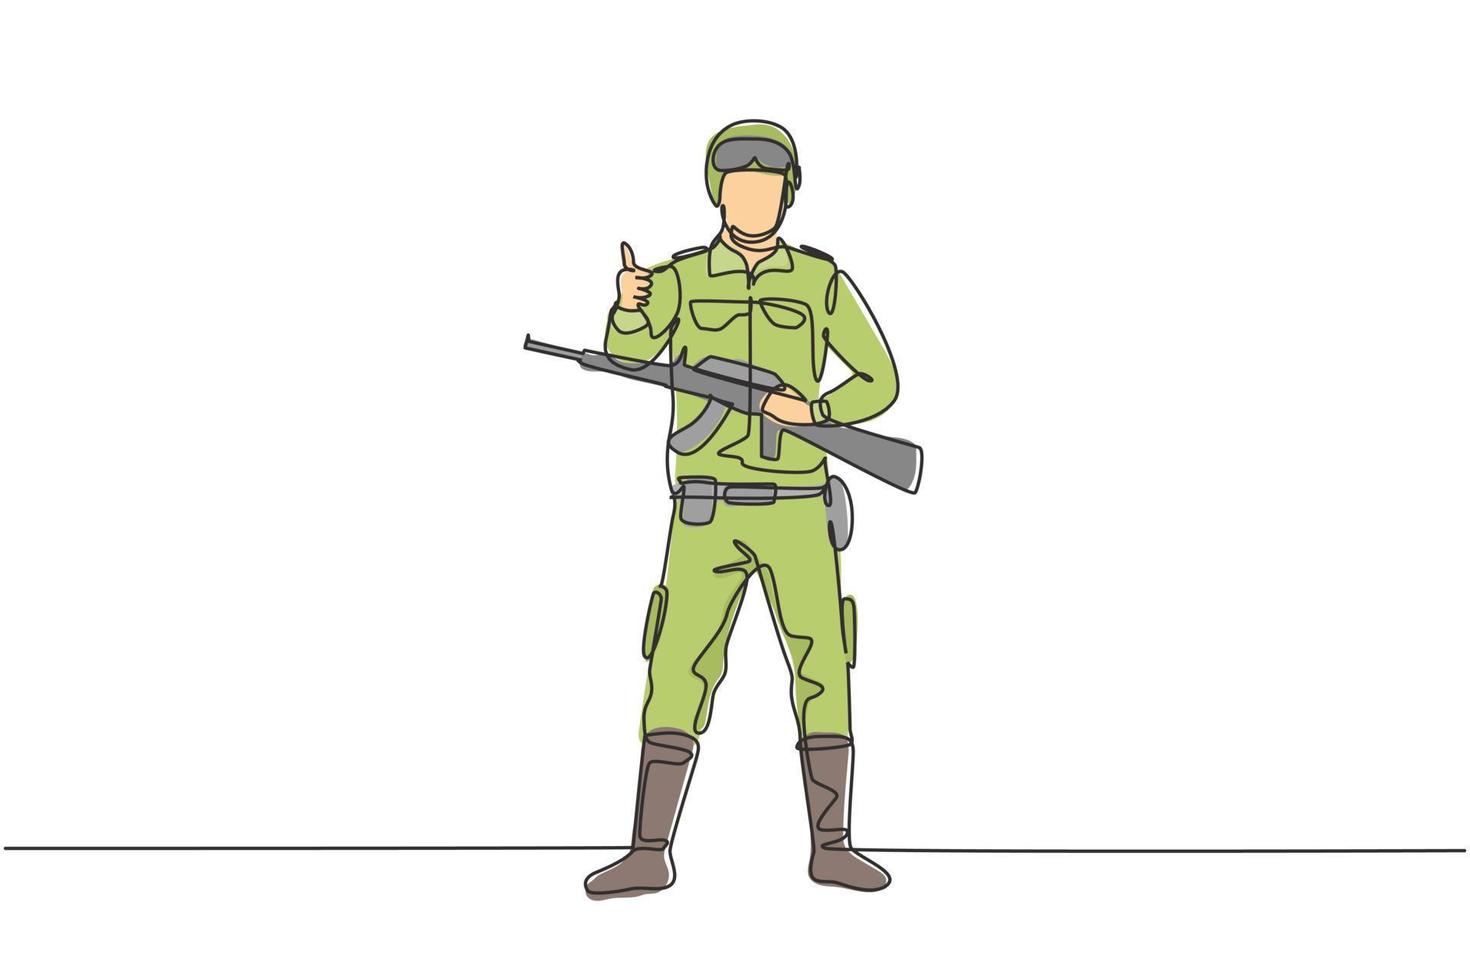 Los soldados de dibujo continuo de una línea están de pie con armas, uniformes completos y gestos de pulgar hacia arriba que sirven al país con la fuerza de las fuerzas militares. Ilustración gráfica de vector de diseño de dibujo de una sola línea